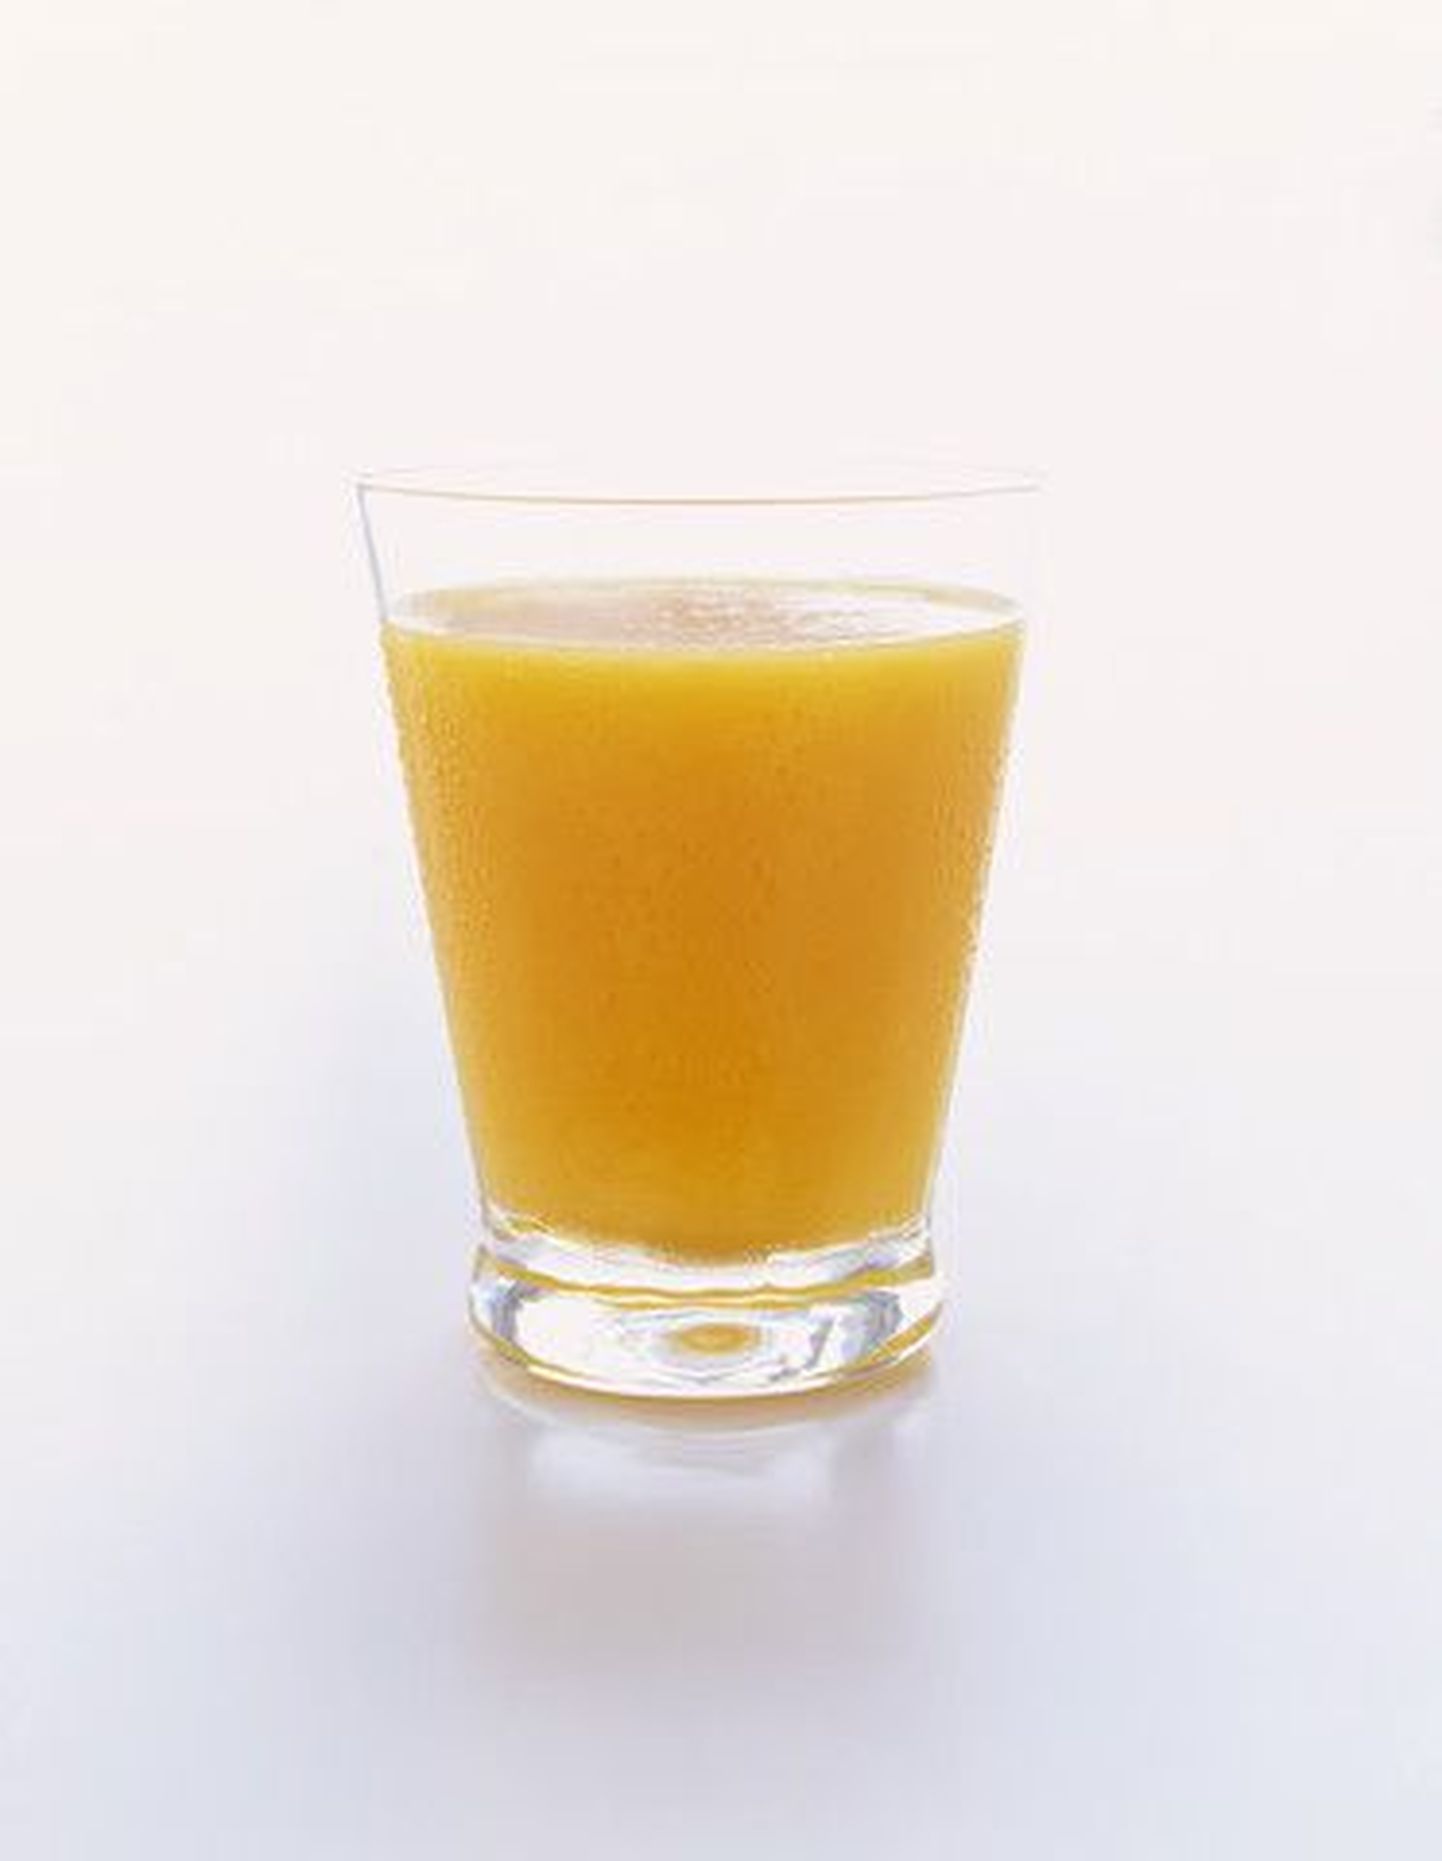 Апельсиновый сок. Снимок иллюстративный